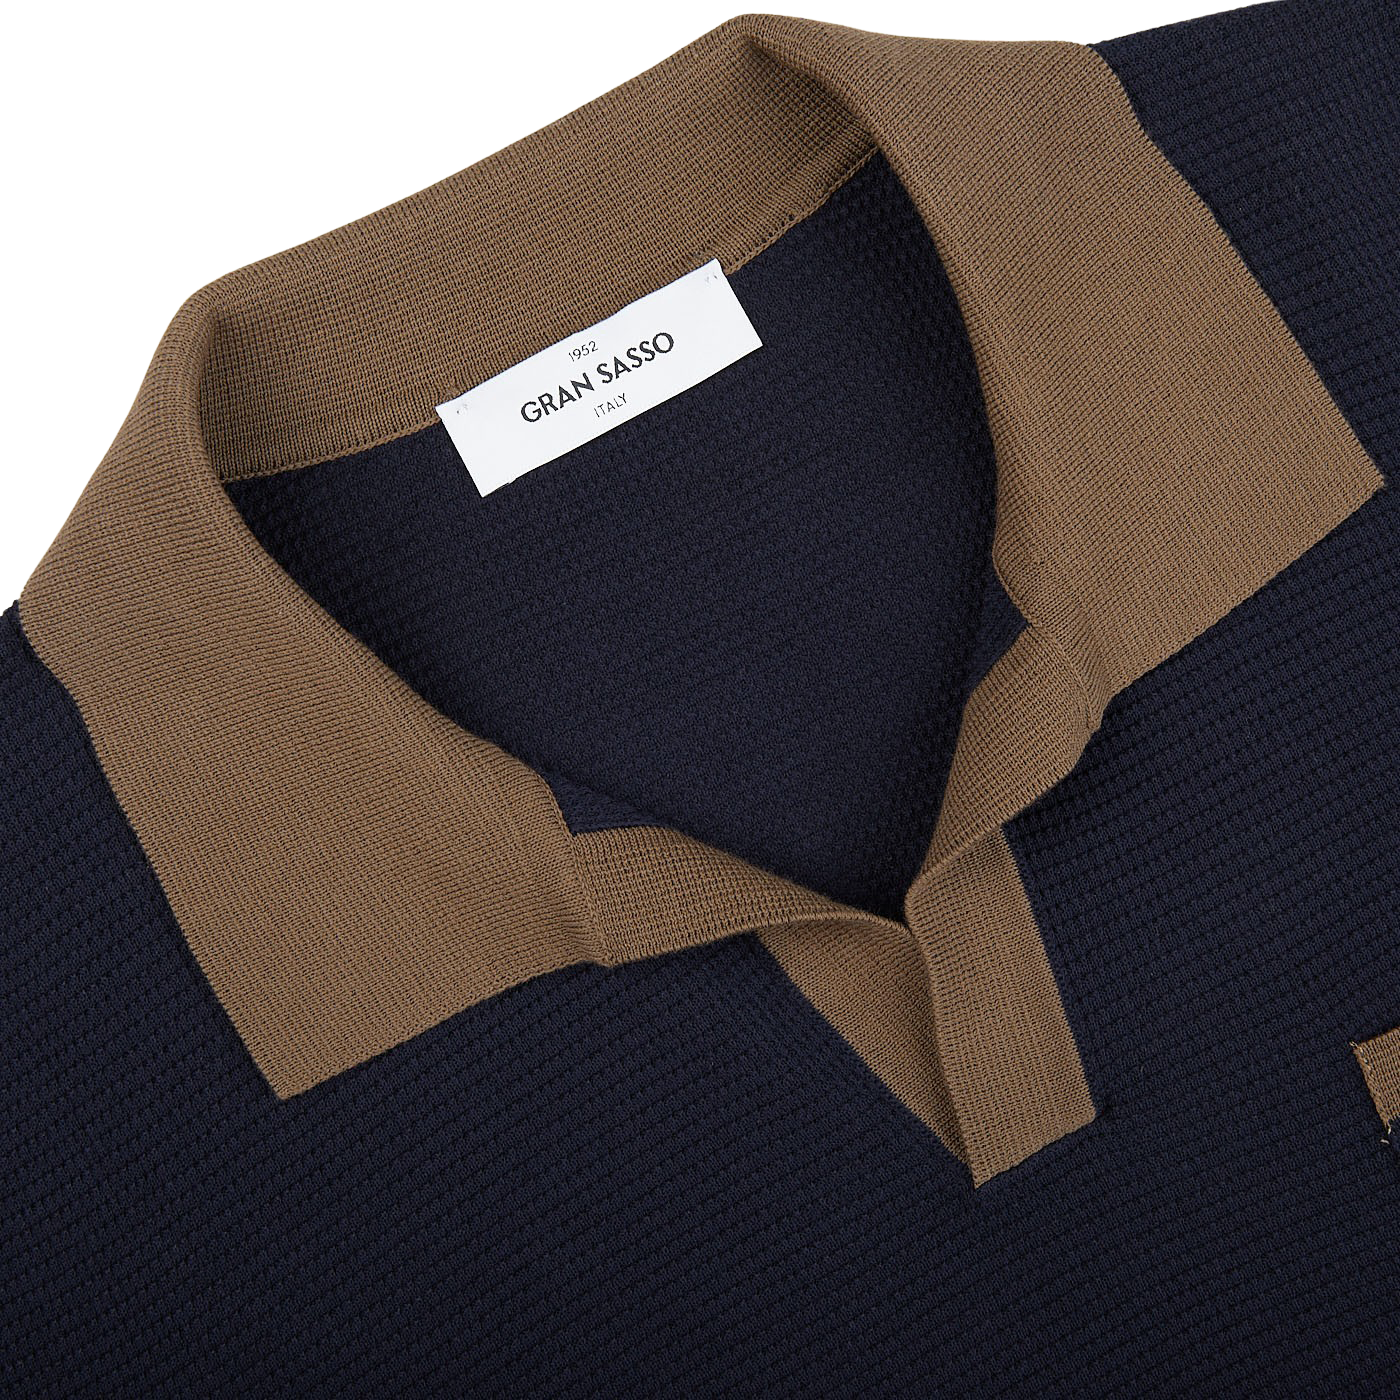 A Navy Fresh Cotton Contrast Collar Polo Shirt by Gran Sasso.